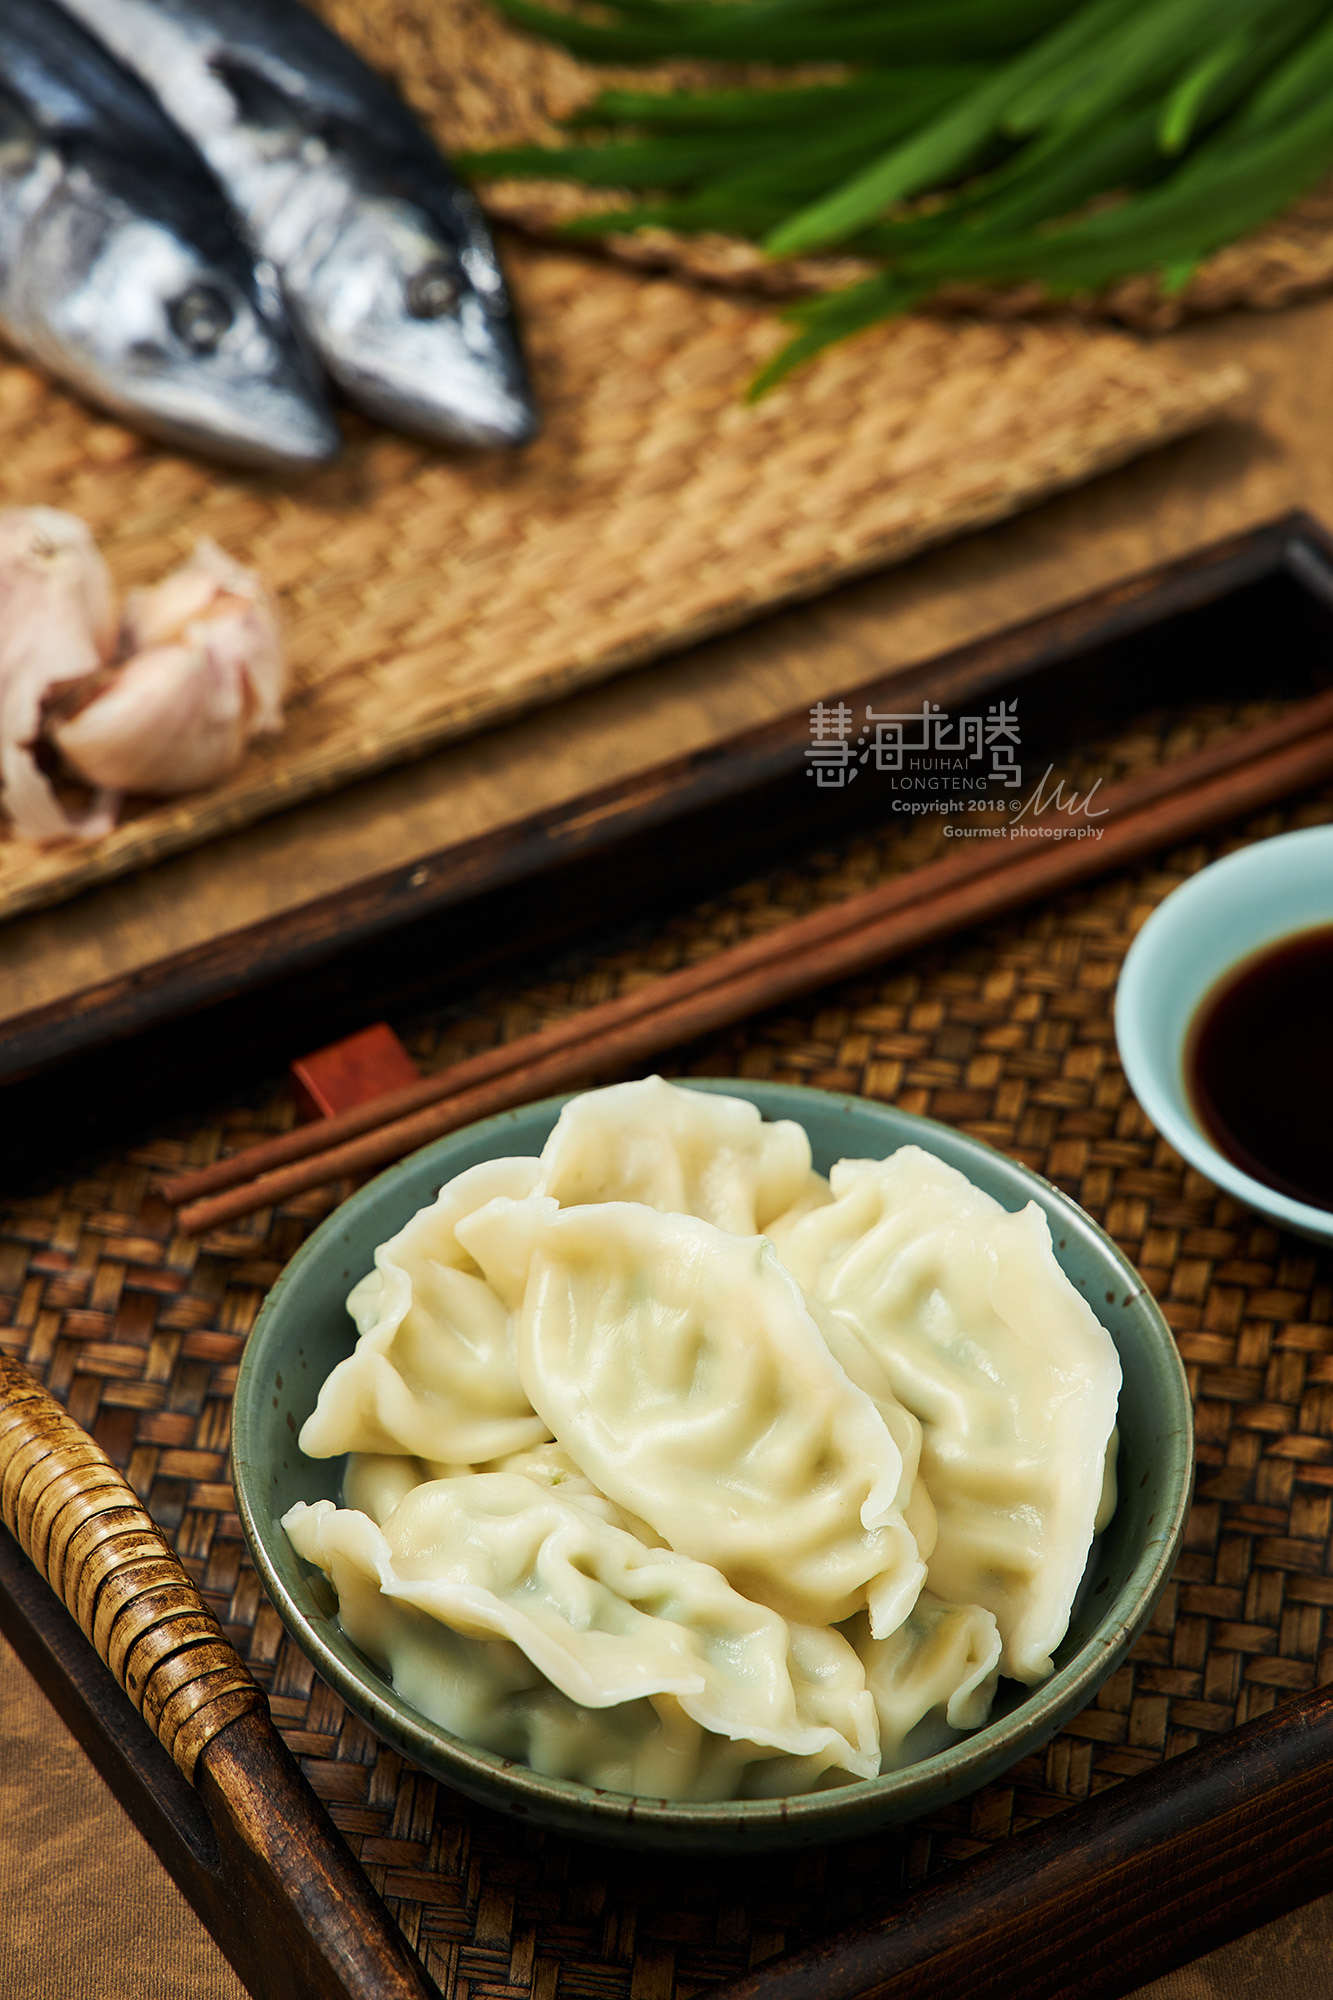 鲅鱼水饺,家乡味道(济南美食摄影)